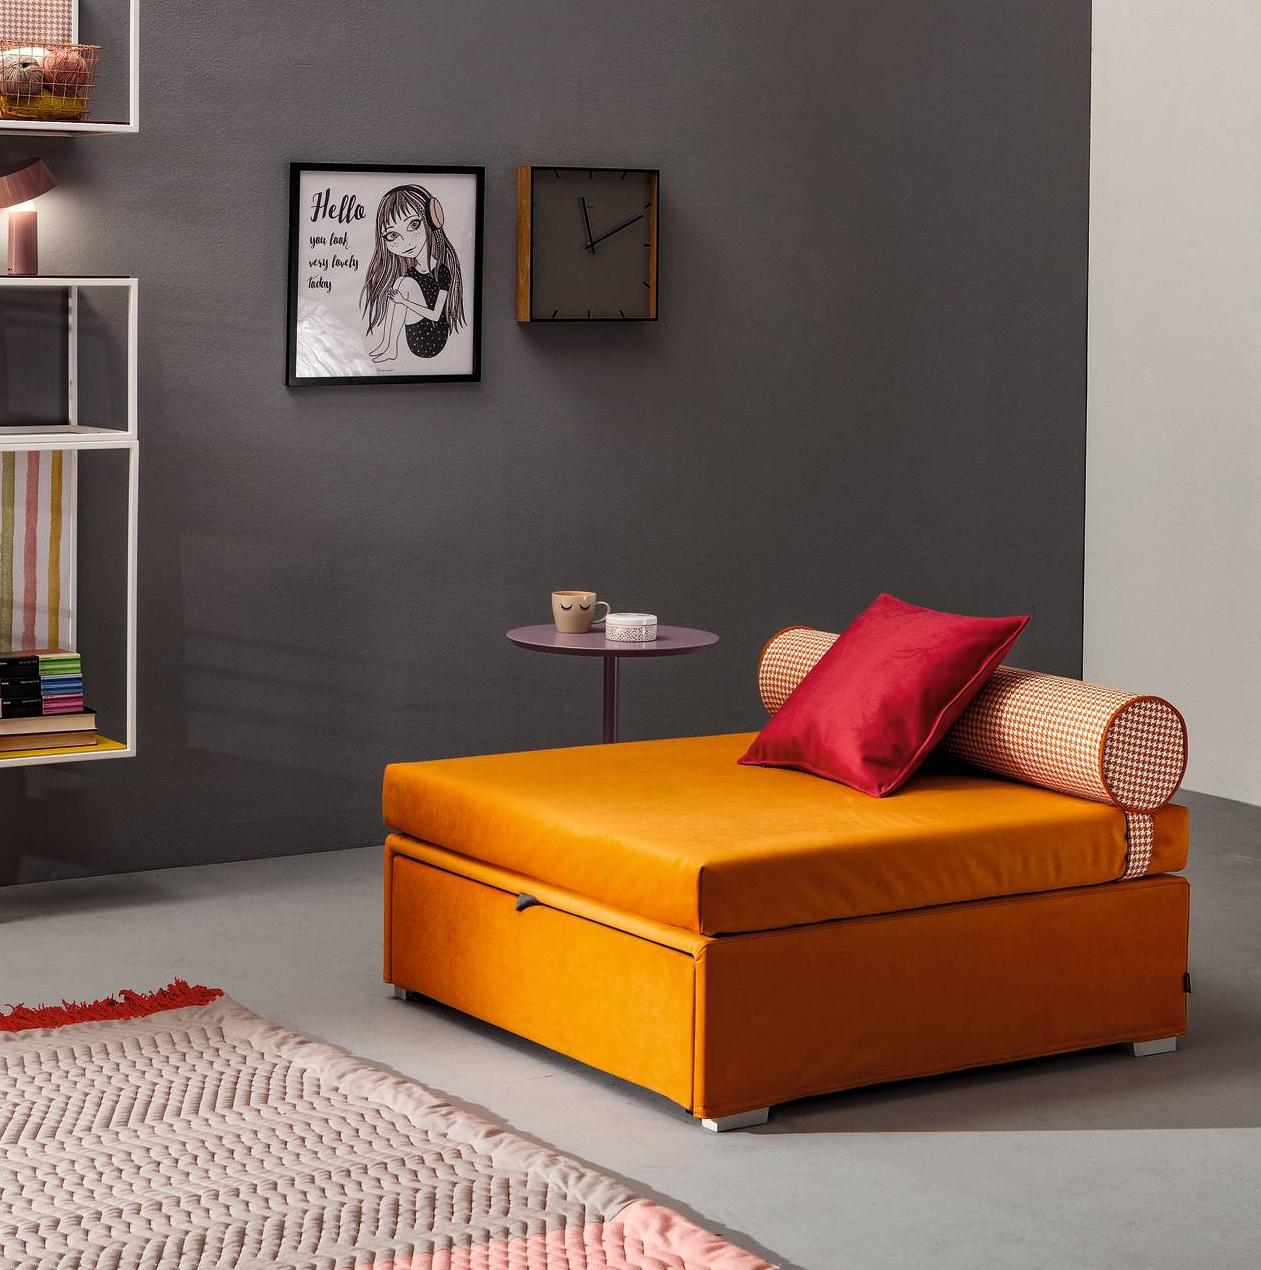 Pouf letto: l'ideale per chi ha poco spazio in casa – Casa e Trend